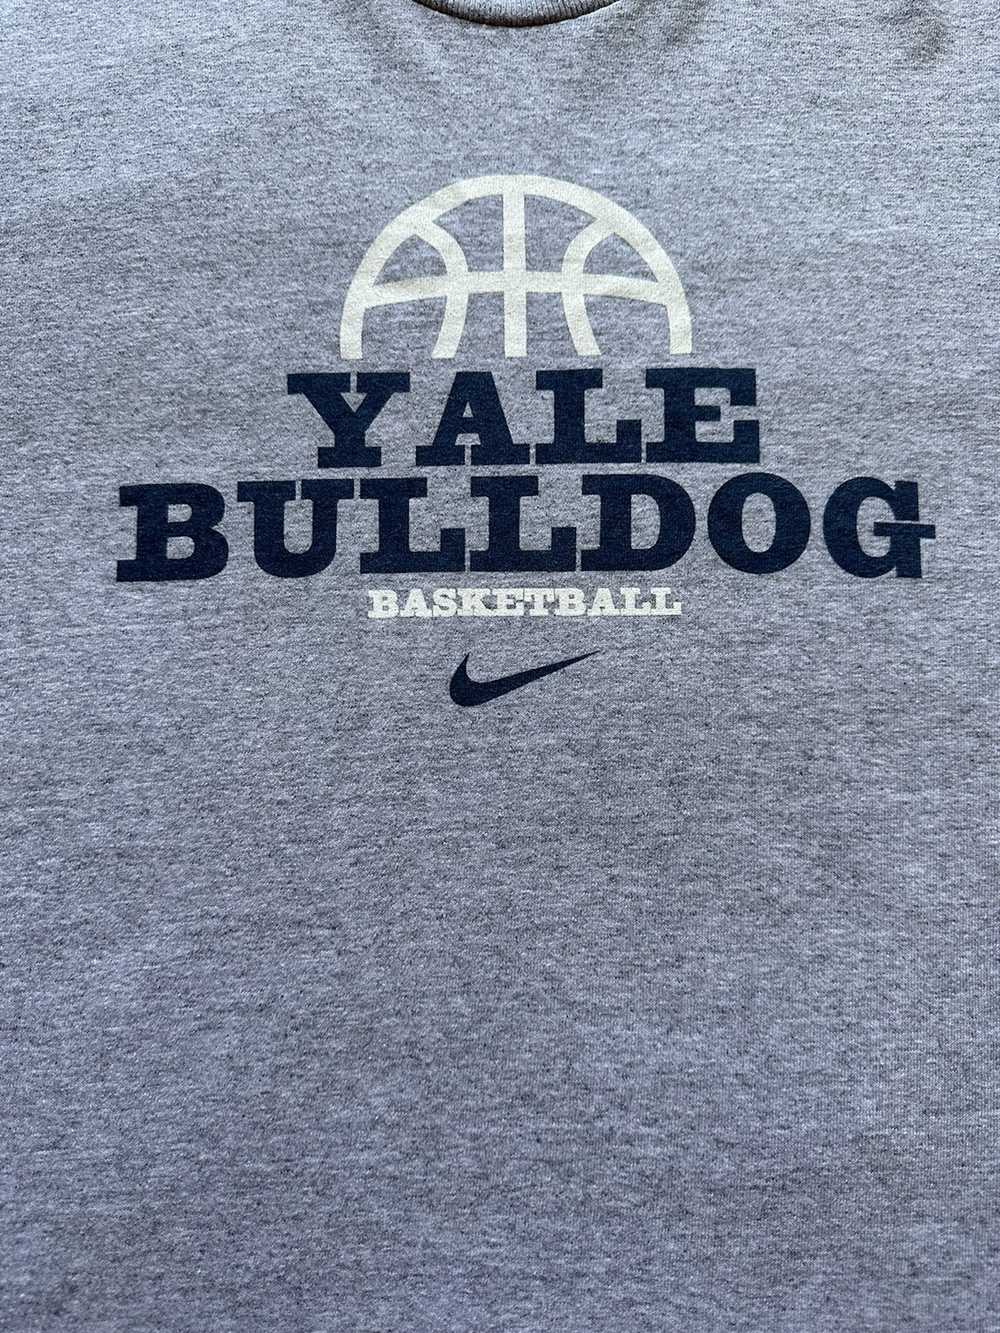 Vintage Nike Yale bull dogs - image 4